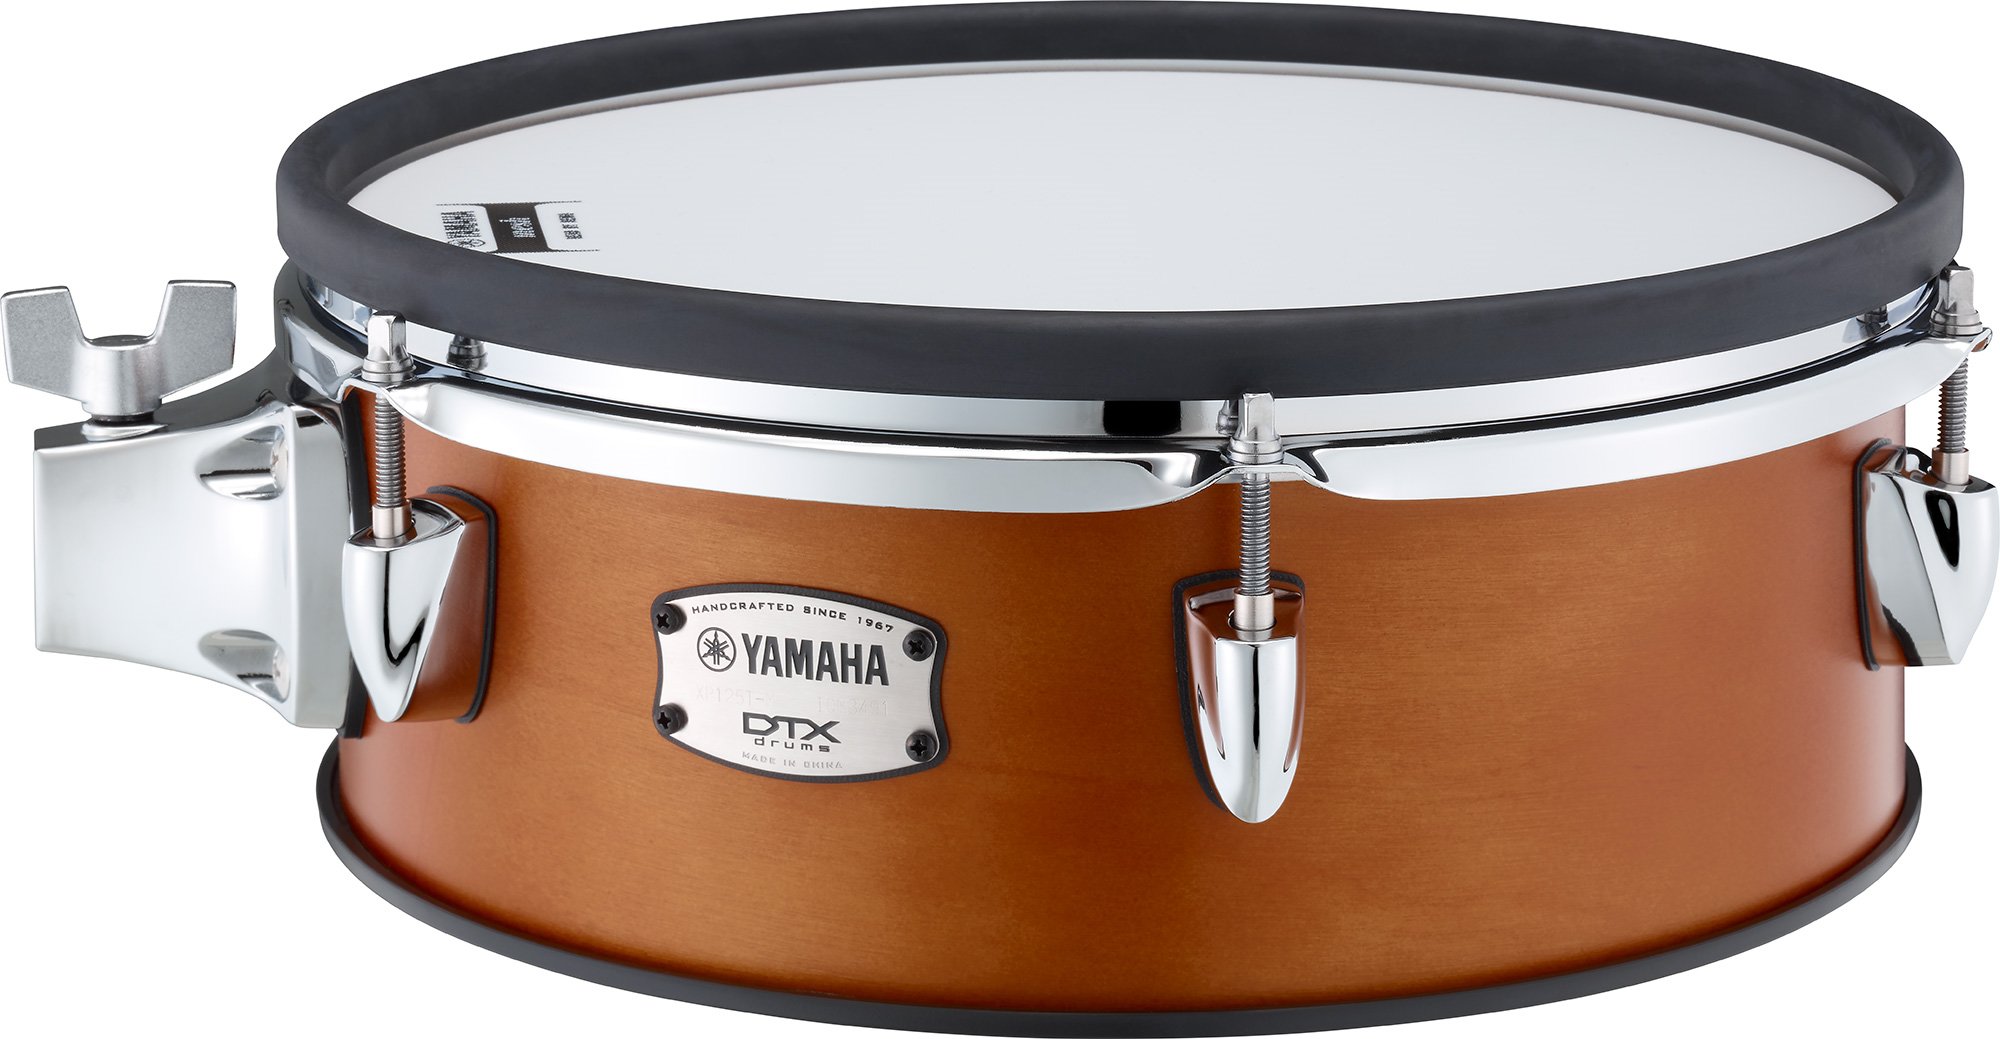 YAMAHA Mesh Headシリーズ 電子ドラム用スネア/タムパッドXP125T-M RW 12quot; Electric Drum  Pad新品在庫状況をご確認ください MUSIC PLANT WEBSHOP